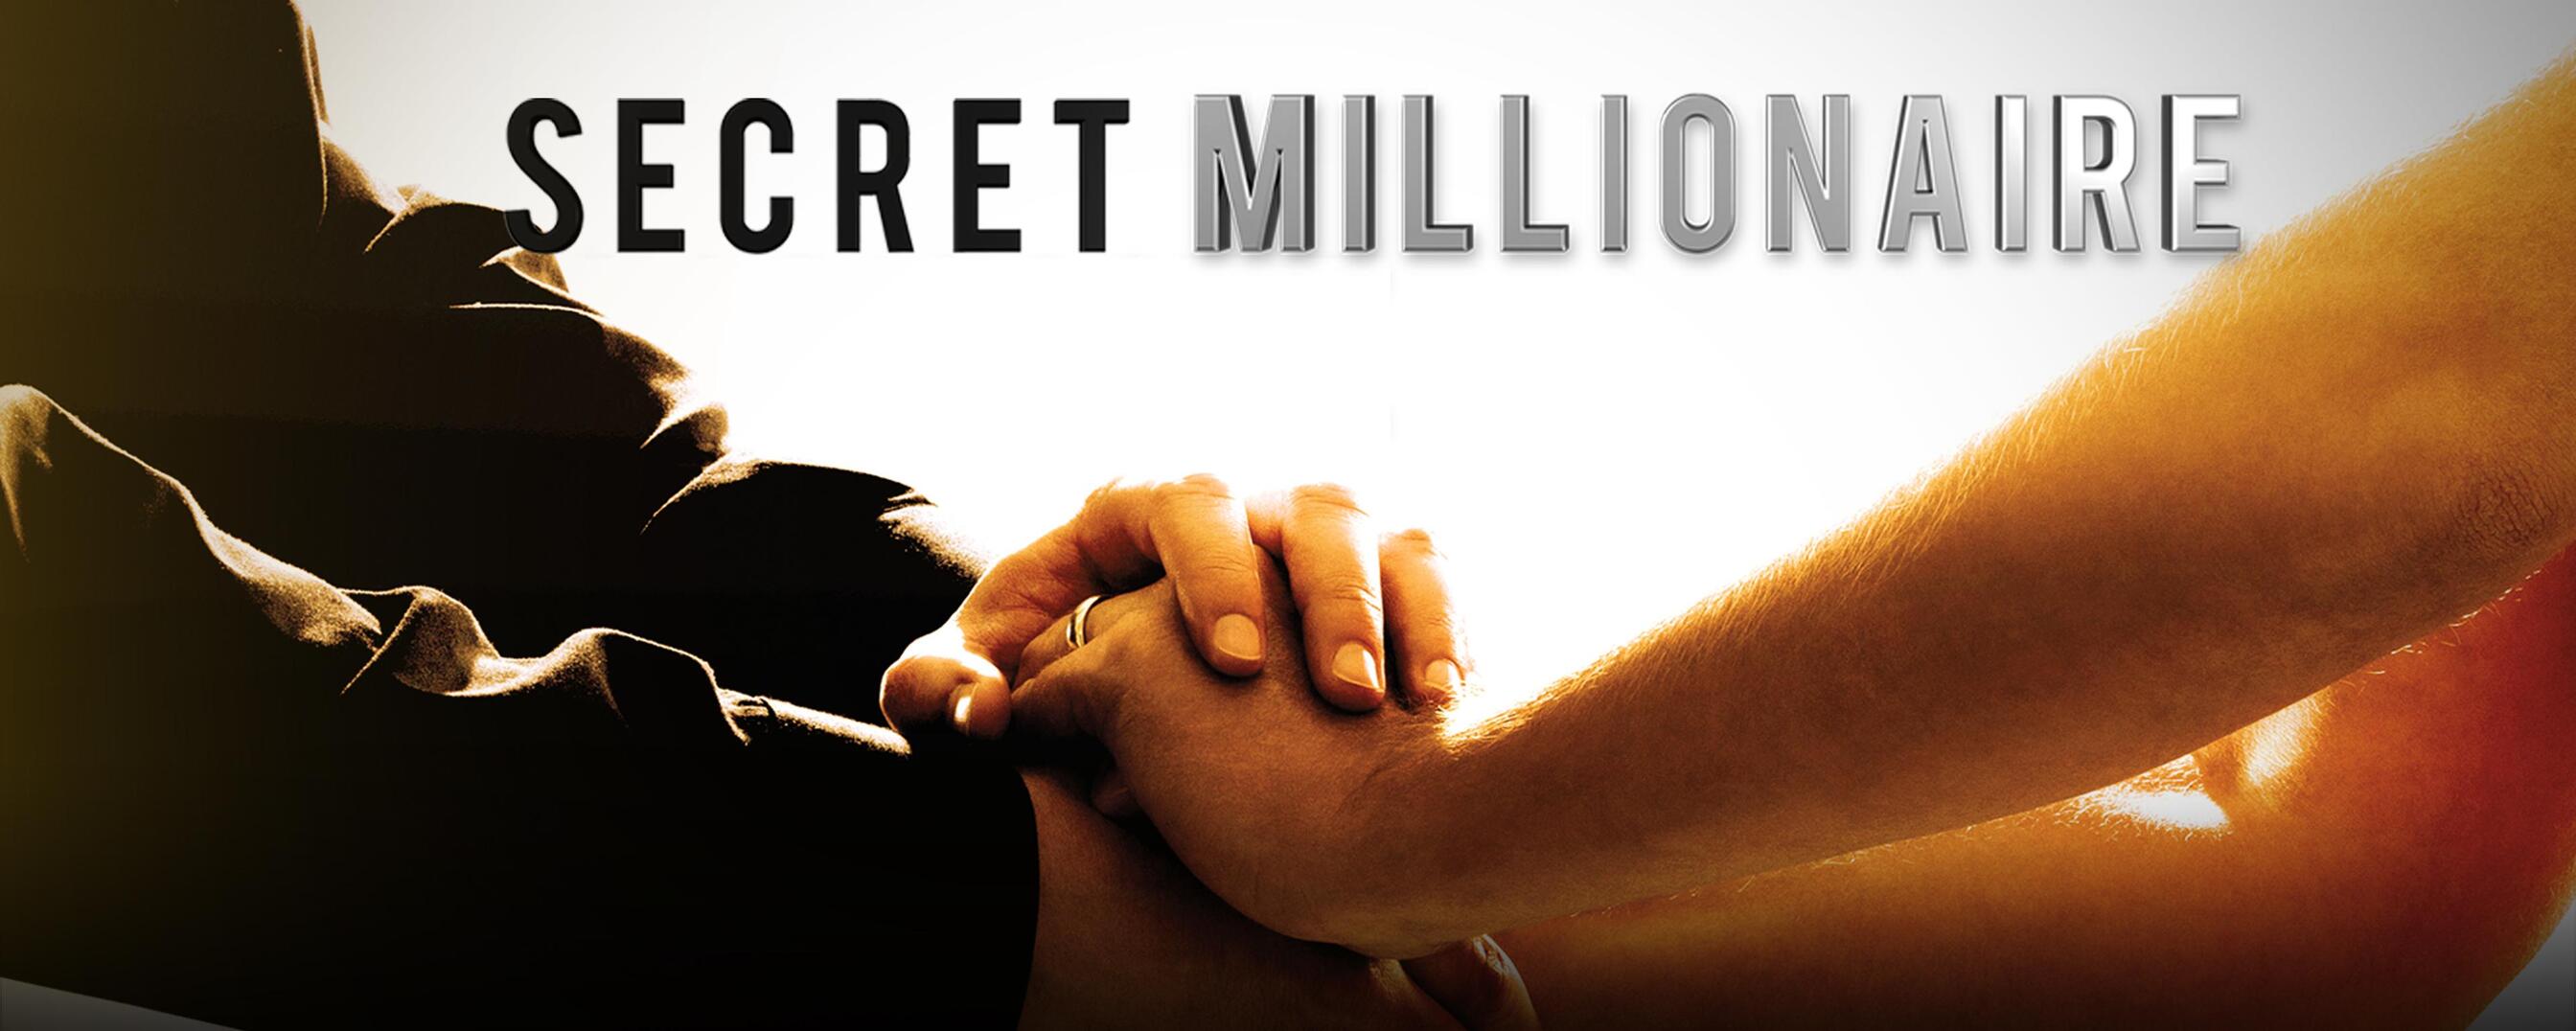 Watch Secret Millionaire TV Show - ABC.com